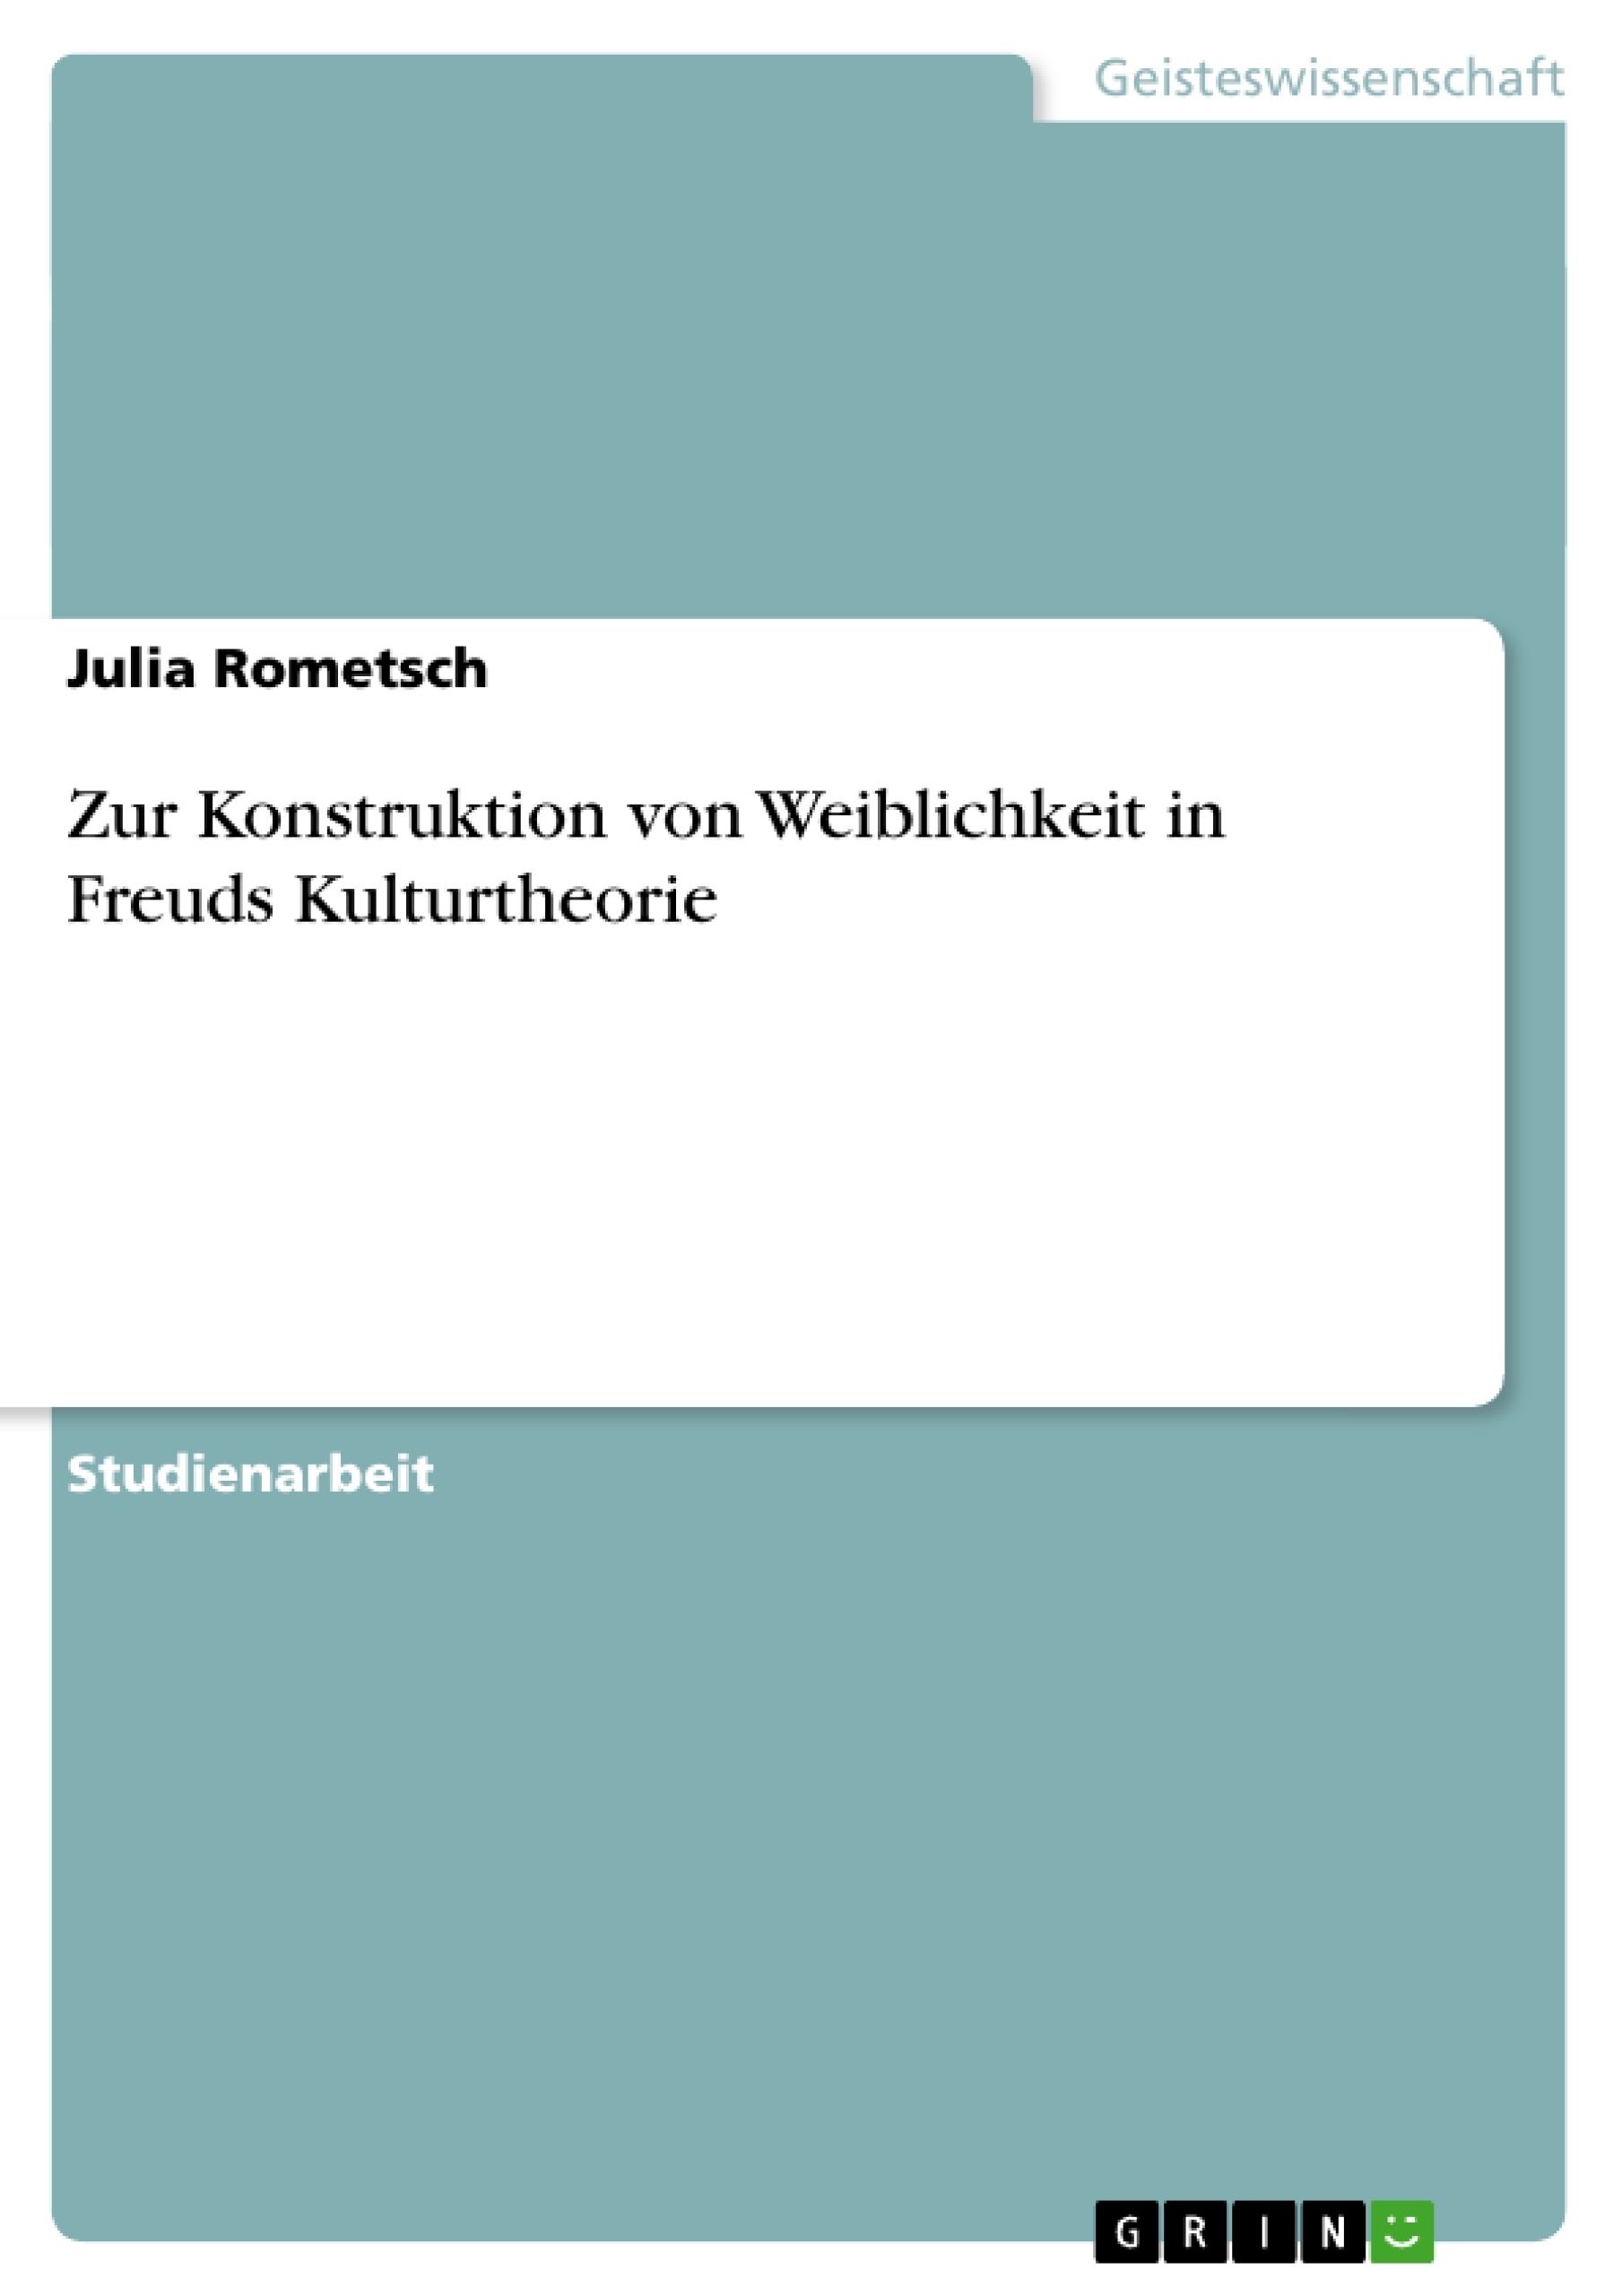 Title: Zur Konstruktion von Weiblichkeit in Freuds Kulturtheorie